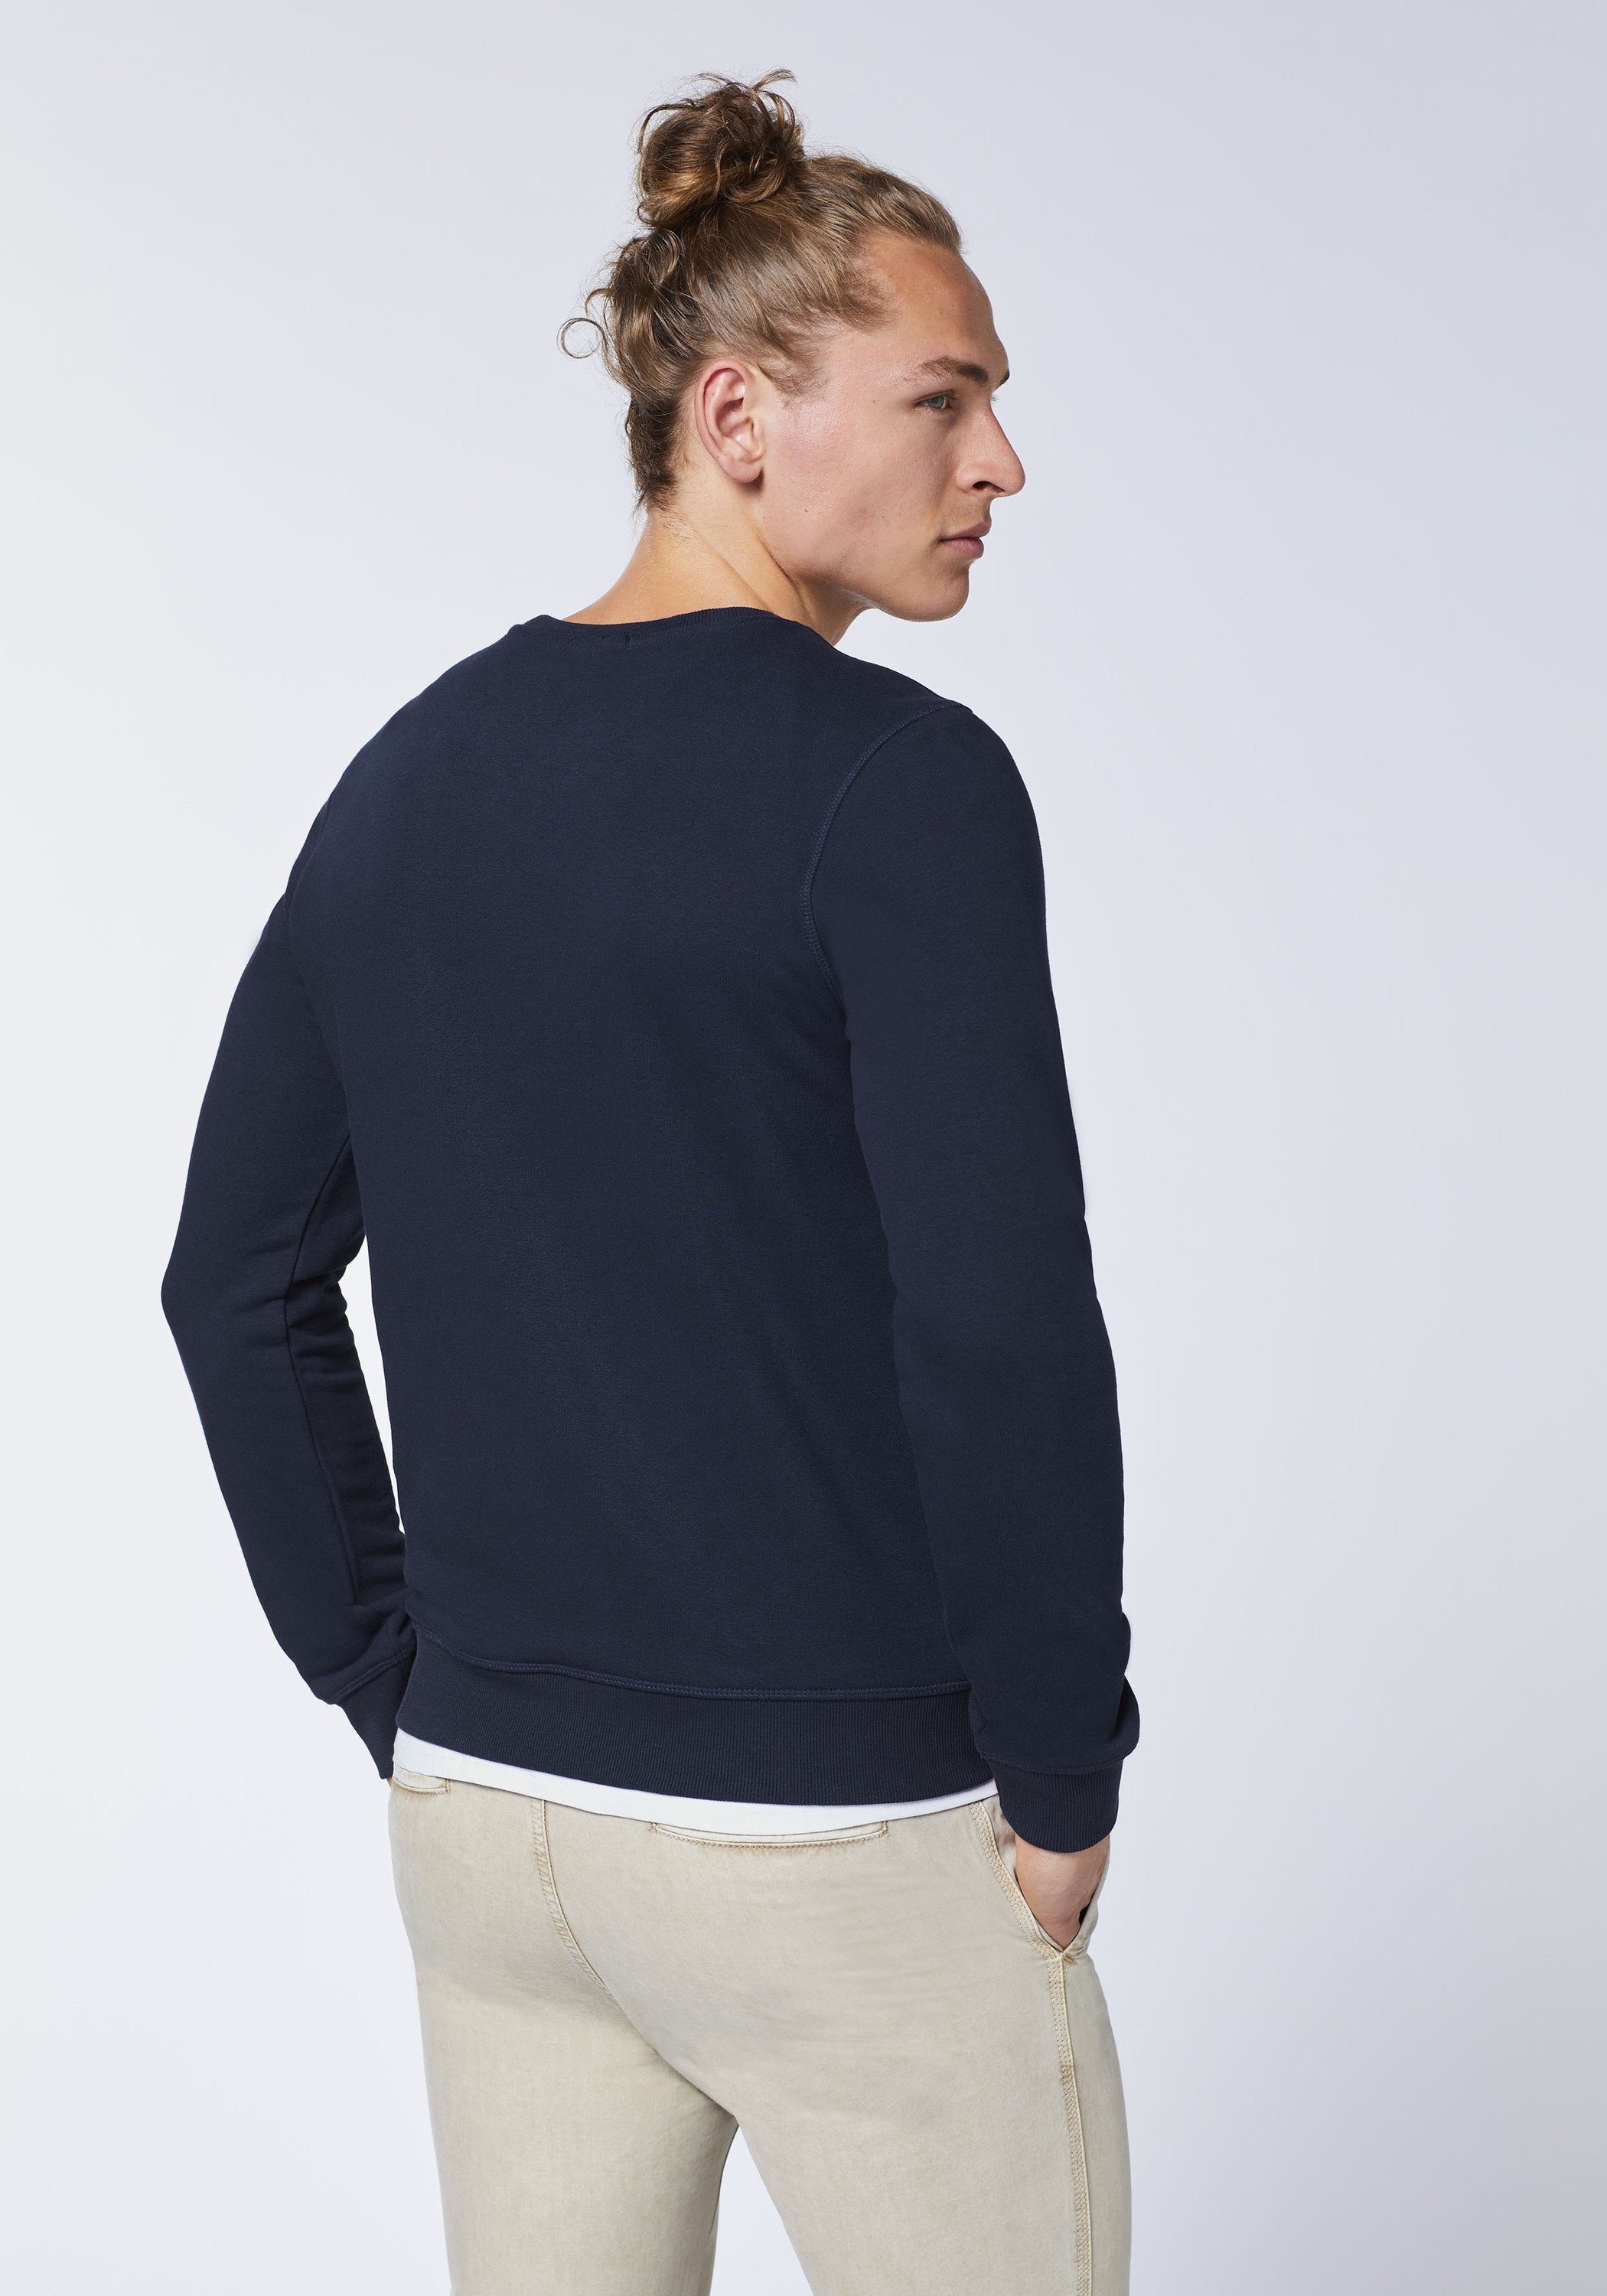 Chiemsee Sweatshirt Sweater im blau 1 Label-Look dunkel